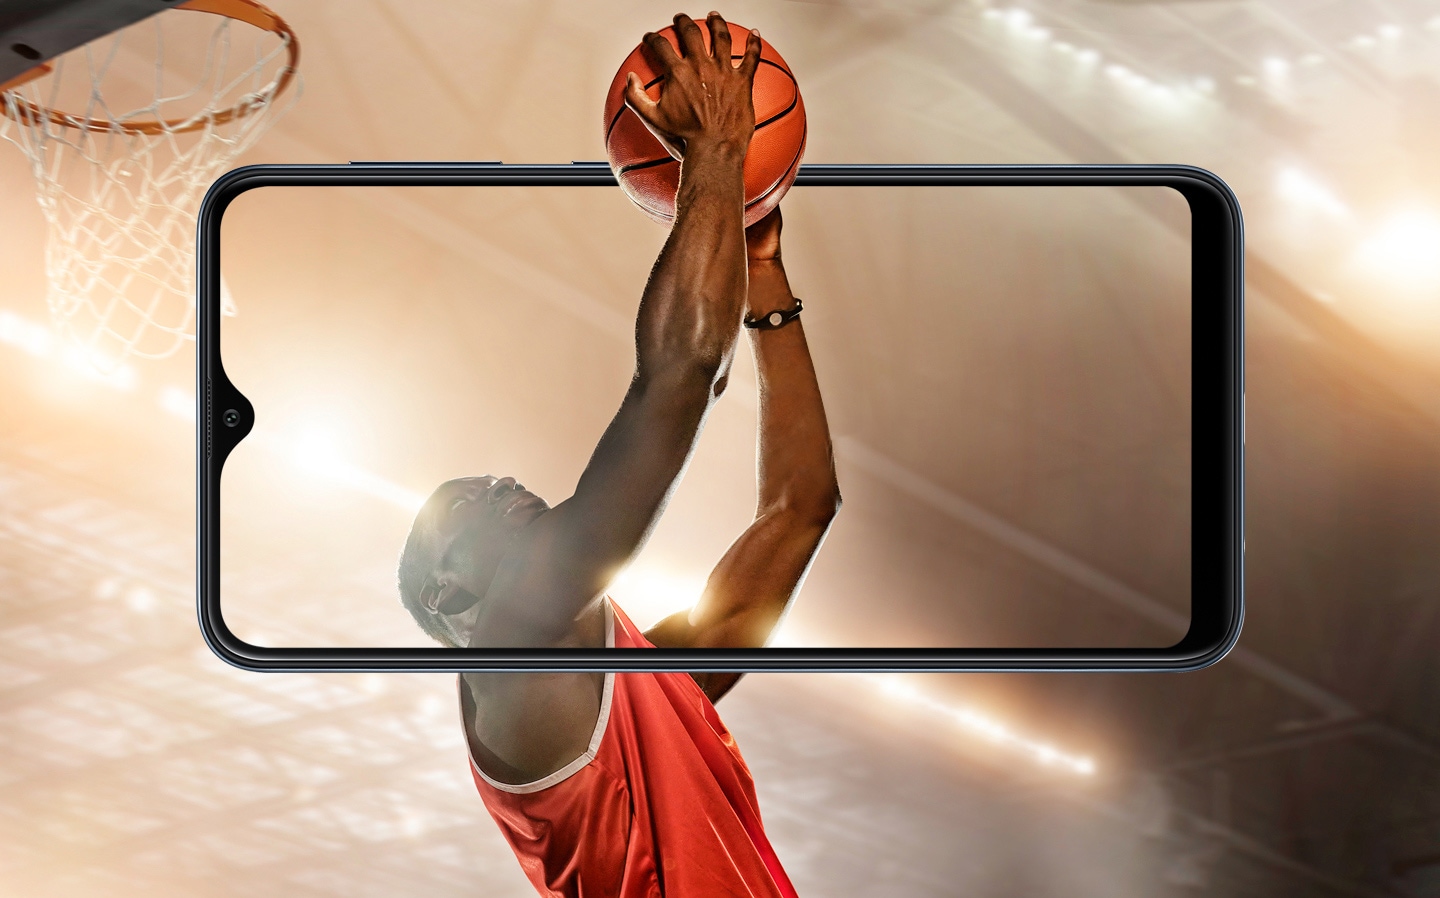 Jogador de basquete no ar em busca de uma enterrada. O movimento do jogador começa por fora de um celular Galaxy A10 e o braço do jogador passa por dentro do Display do smartphone.